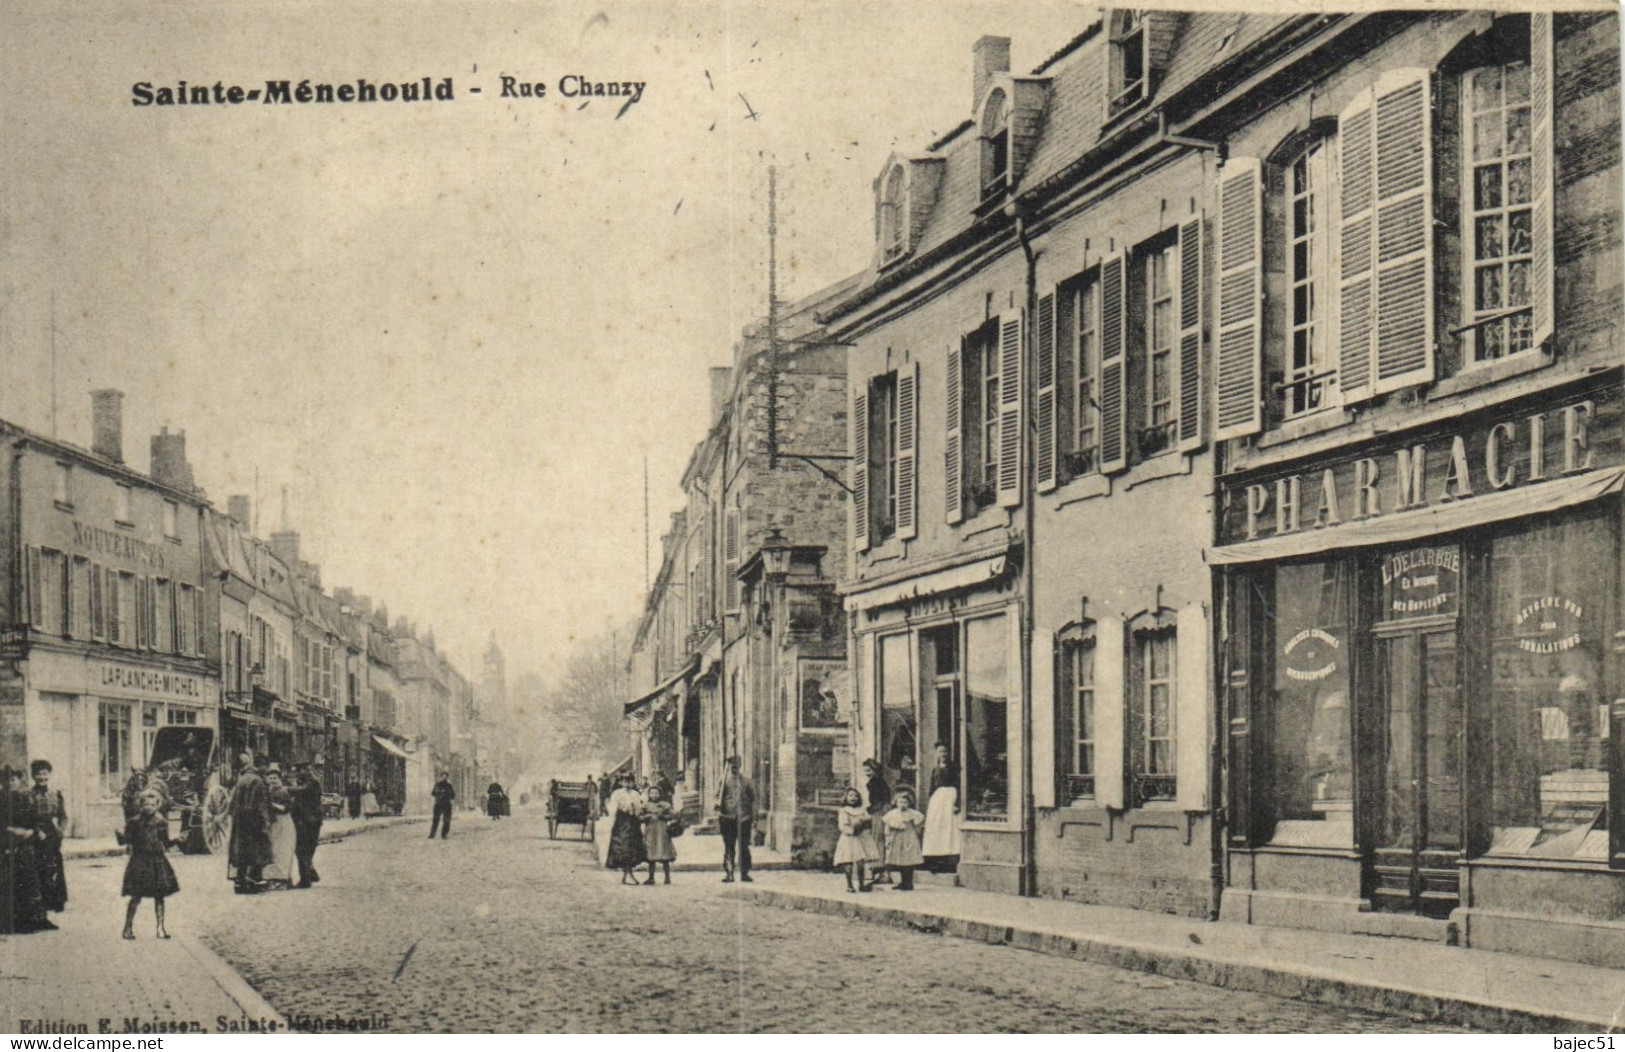 Sainte Ménehould - Rue Chanzy "pharmacie" "animés" - Sainte-Menehould